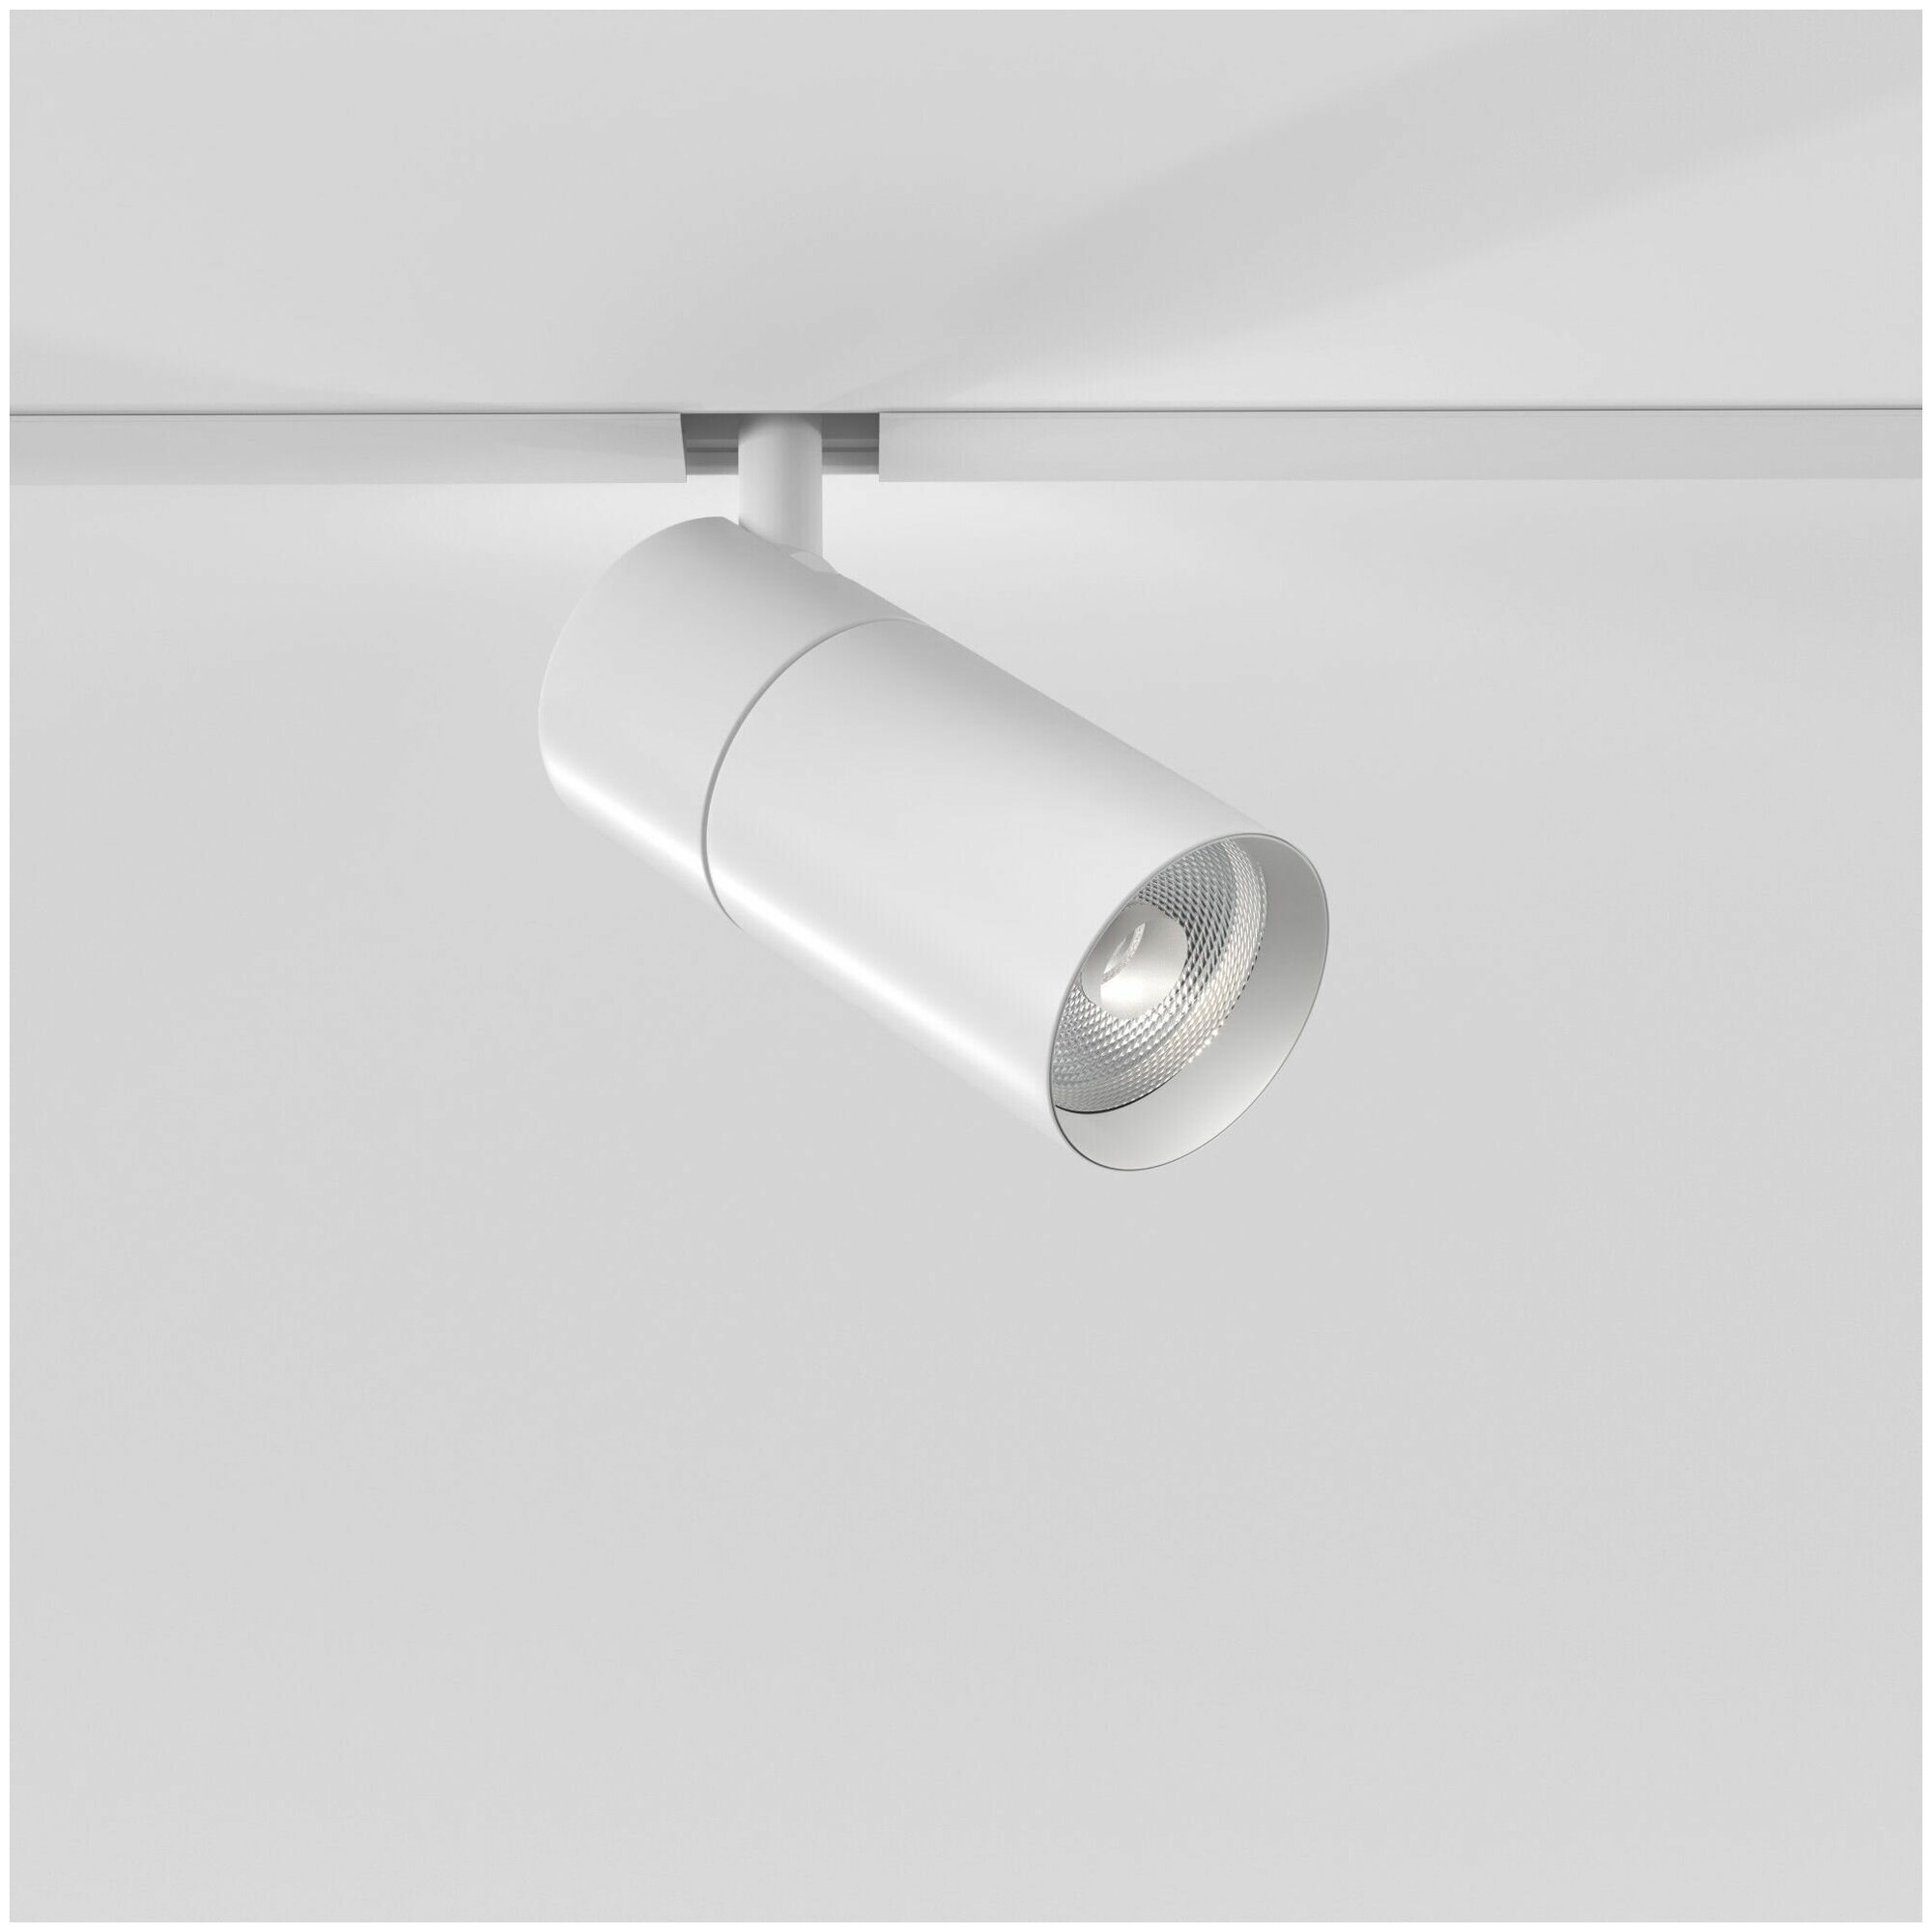 Трековый светодиодный светильник с поворотным механизмом Elektrostandard Slim Magnetic R01 85011/01, 6 Вт, 4200 K, цвет белый